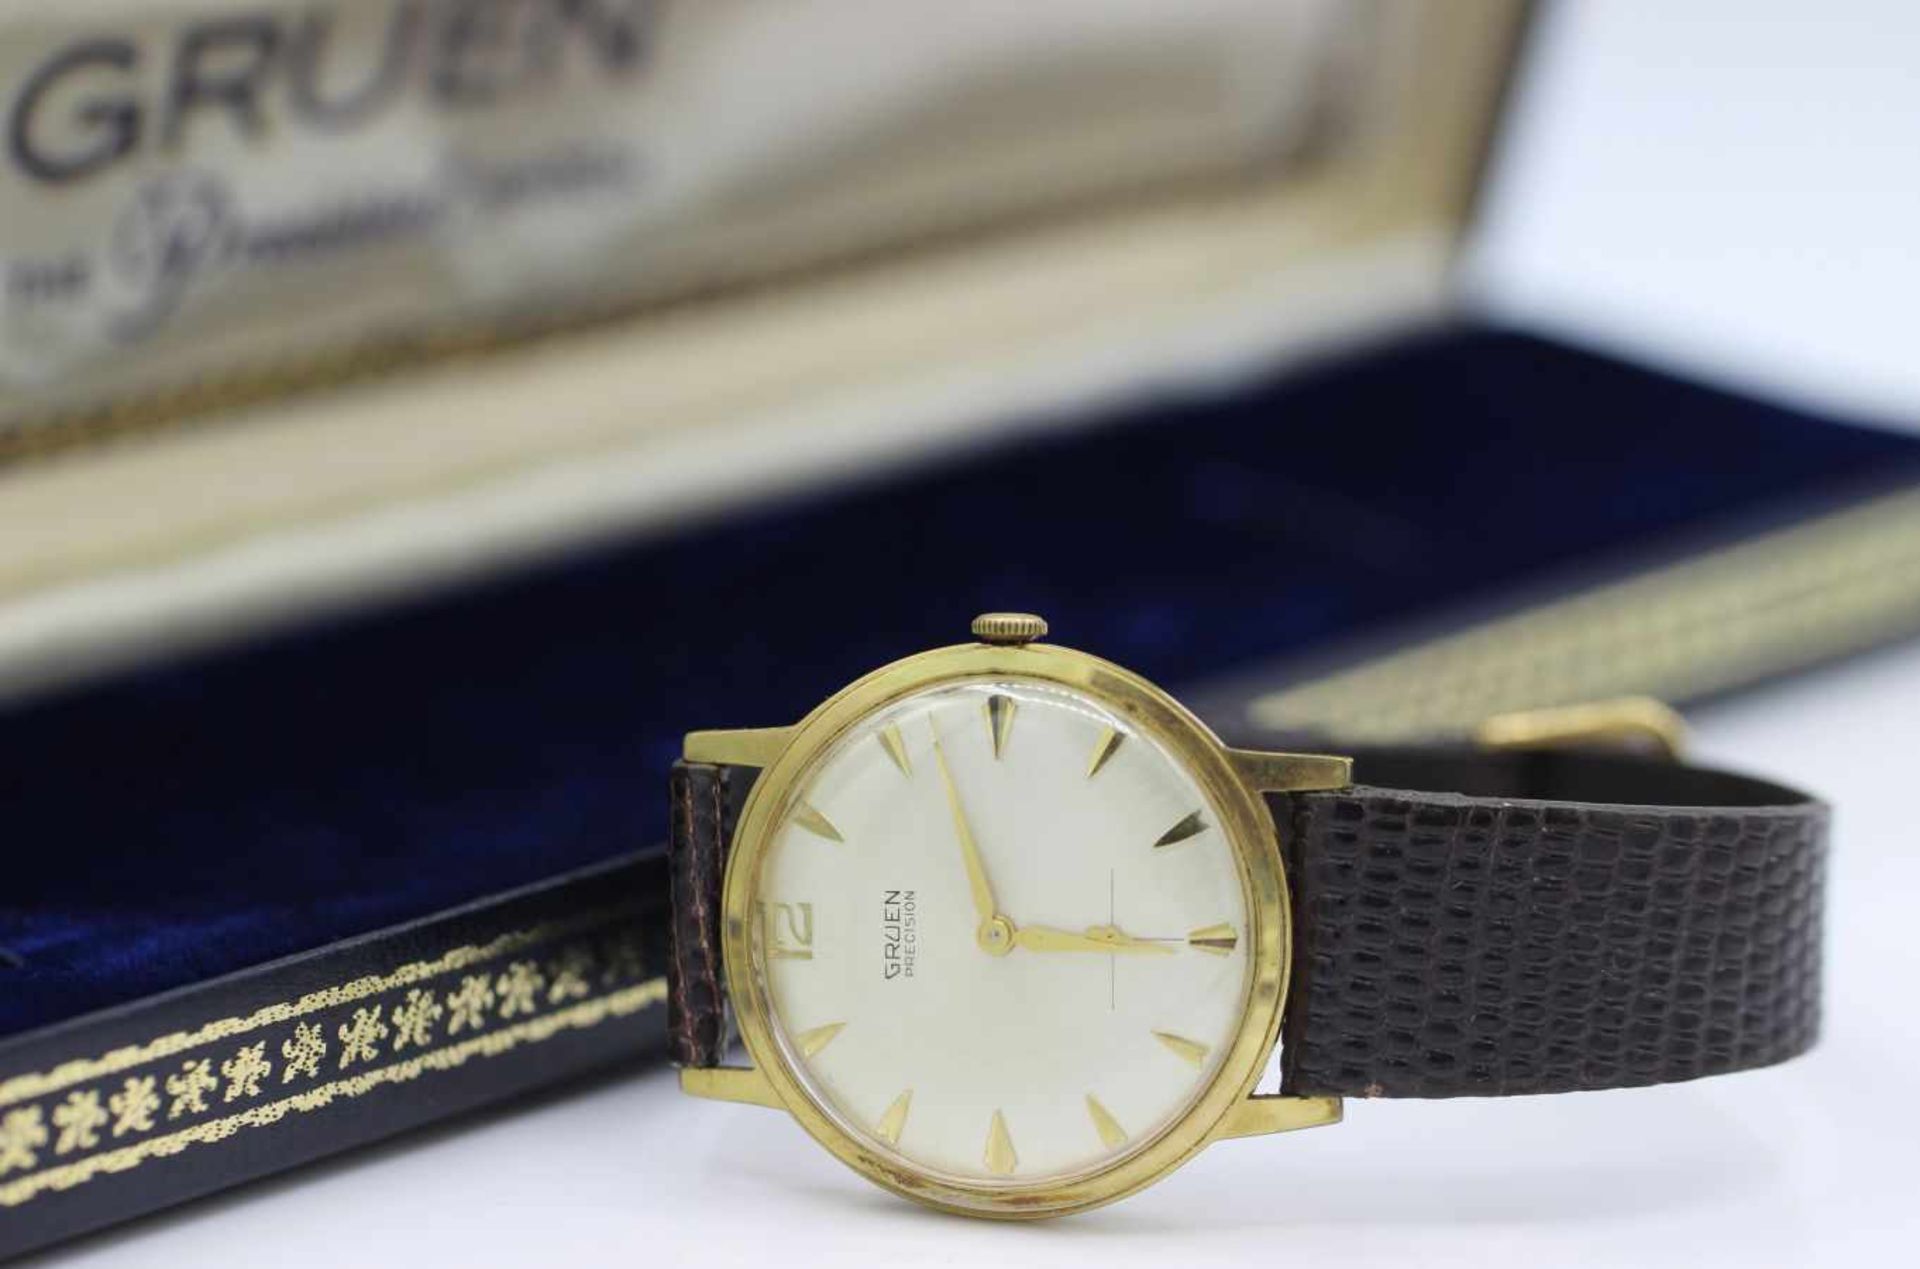 Vintage Armbanduhr Marke Gruen, Modell Precision, 60er Jahre, Gehäuse vergoldet, Durchmesser 34mm,